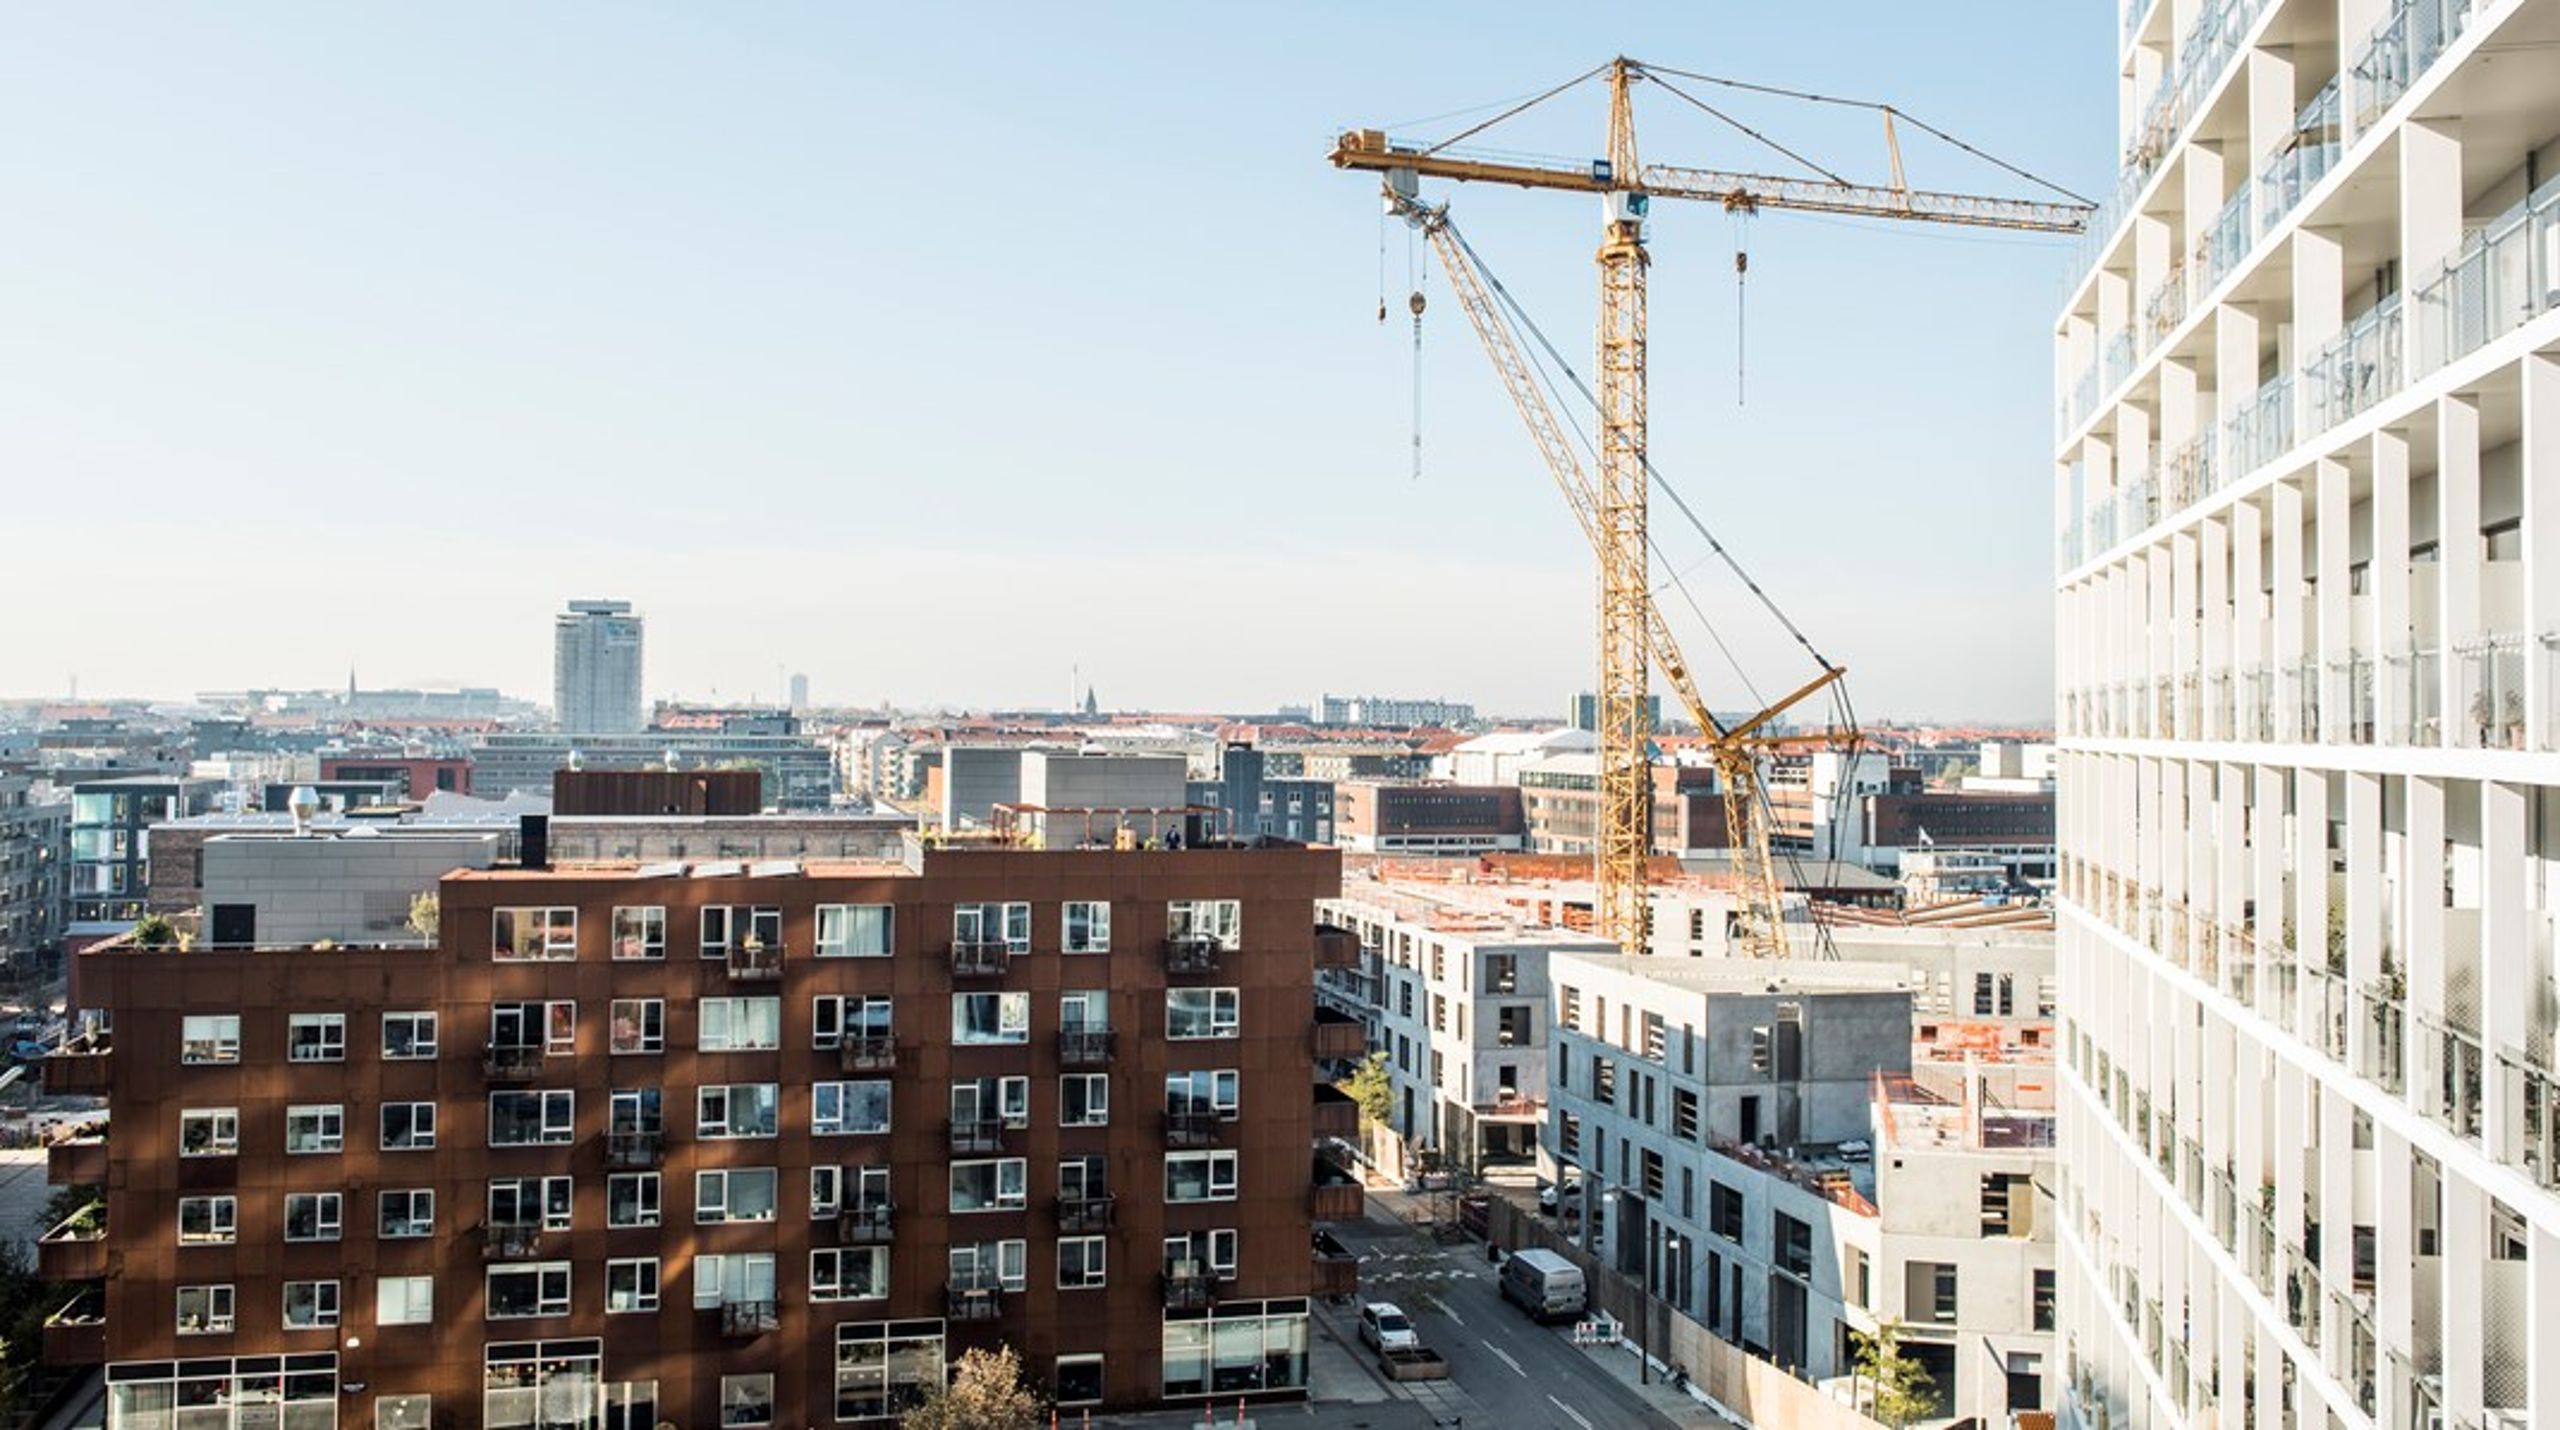 <b></b>Unge uden en stor formue har svært ved at træde ind på boligmarkedet i de større byer, skriver forsker Birthe Larsen fra Copenhagen Business School.